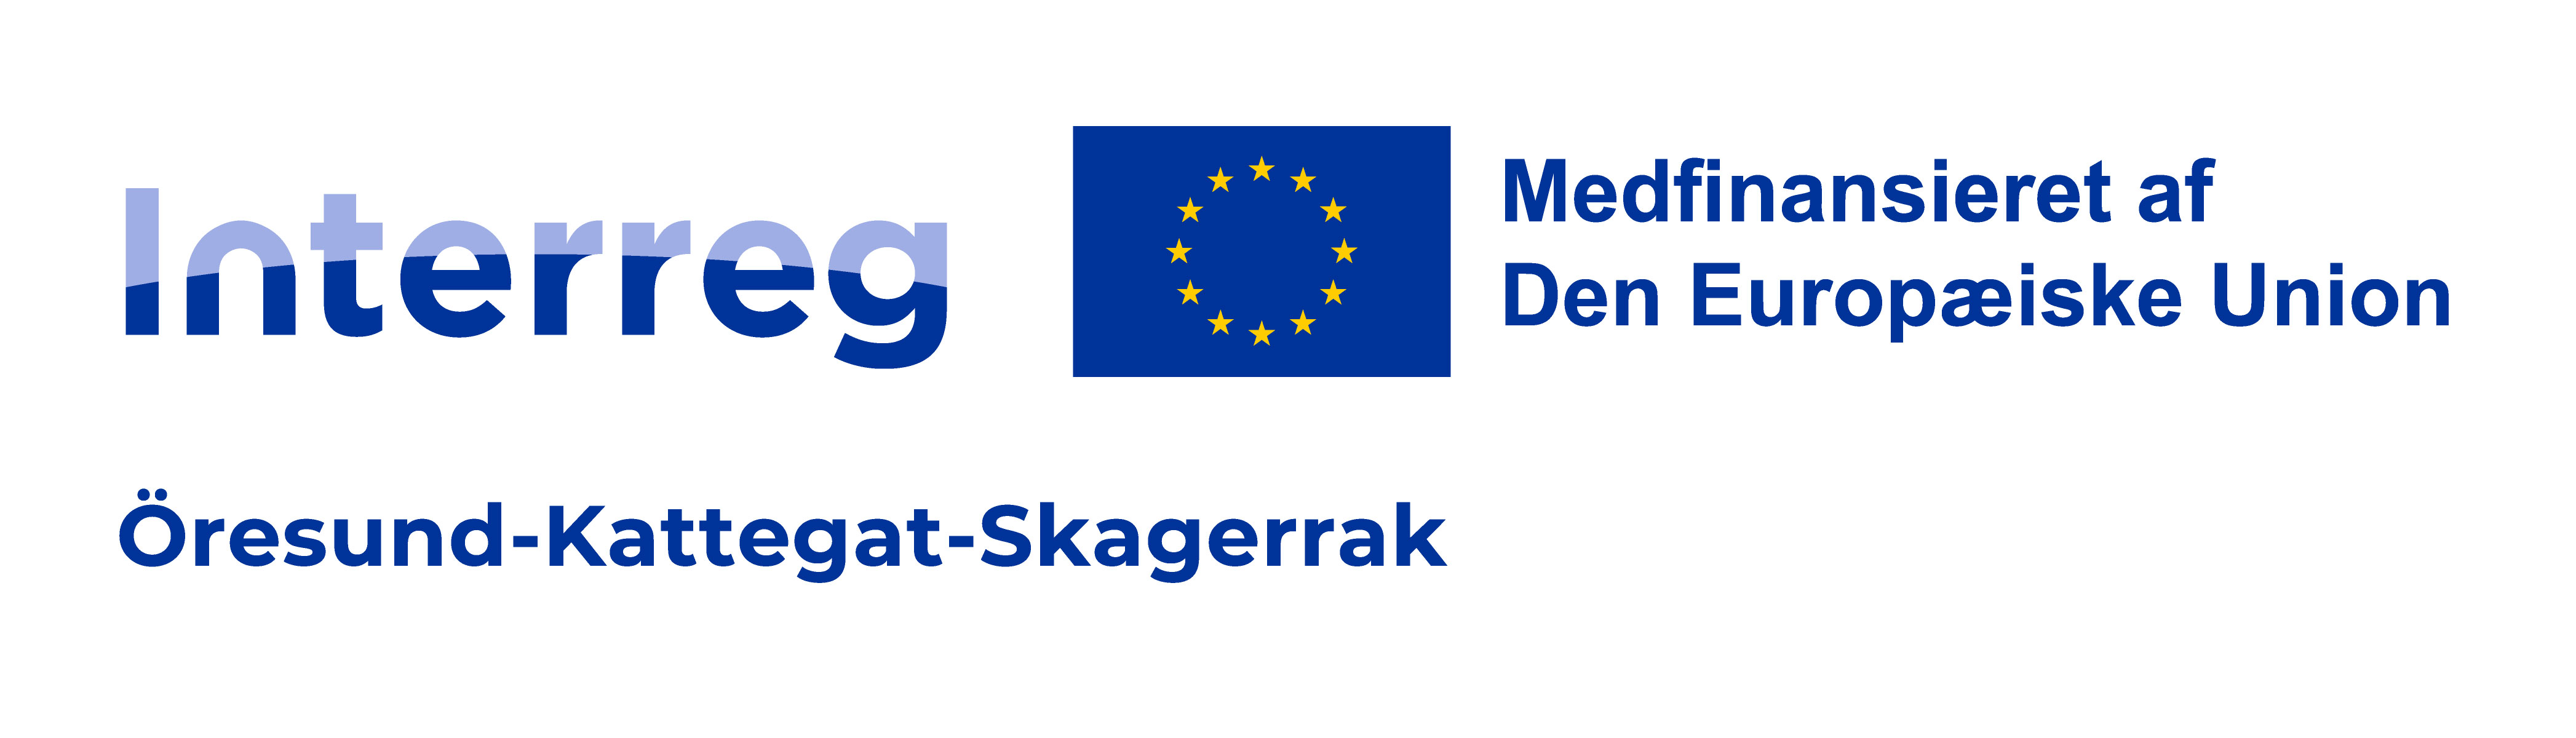 Interreg logo på dansk